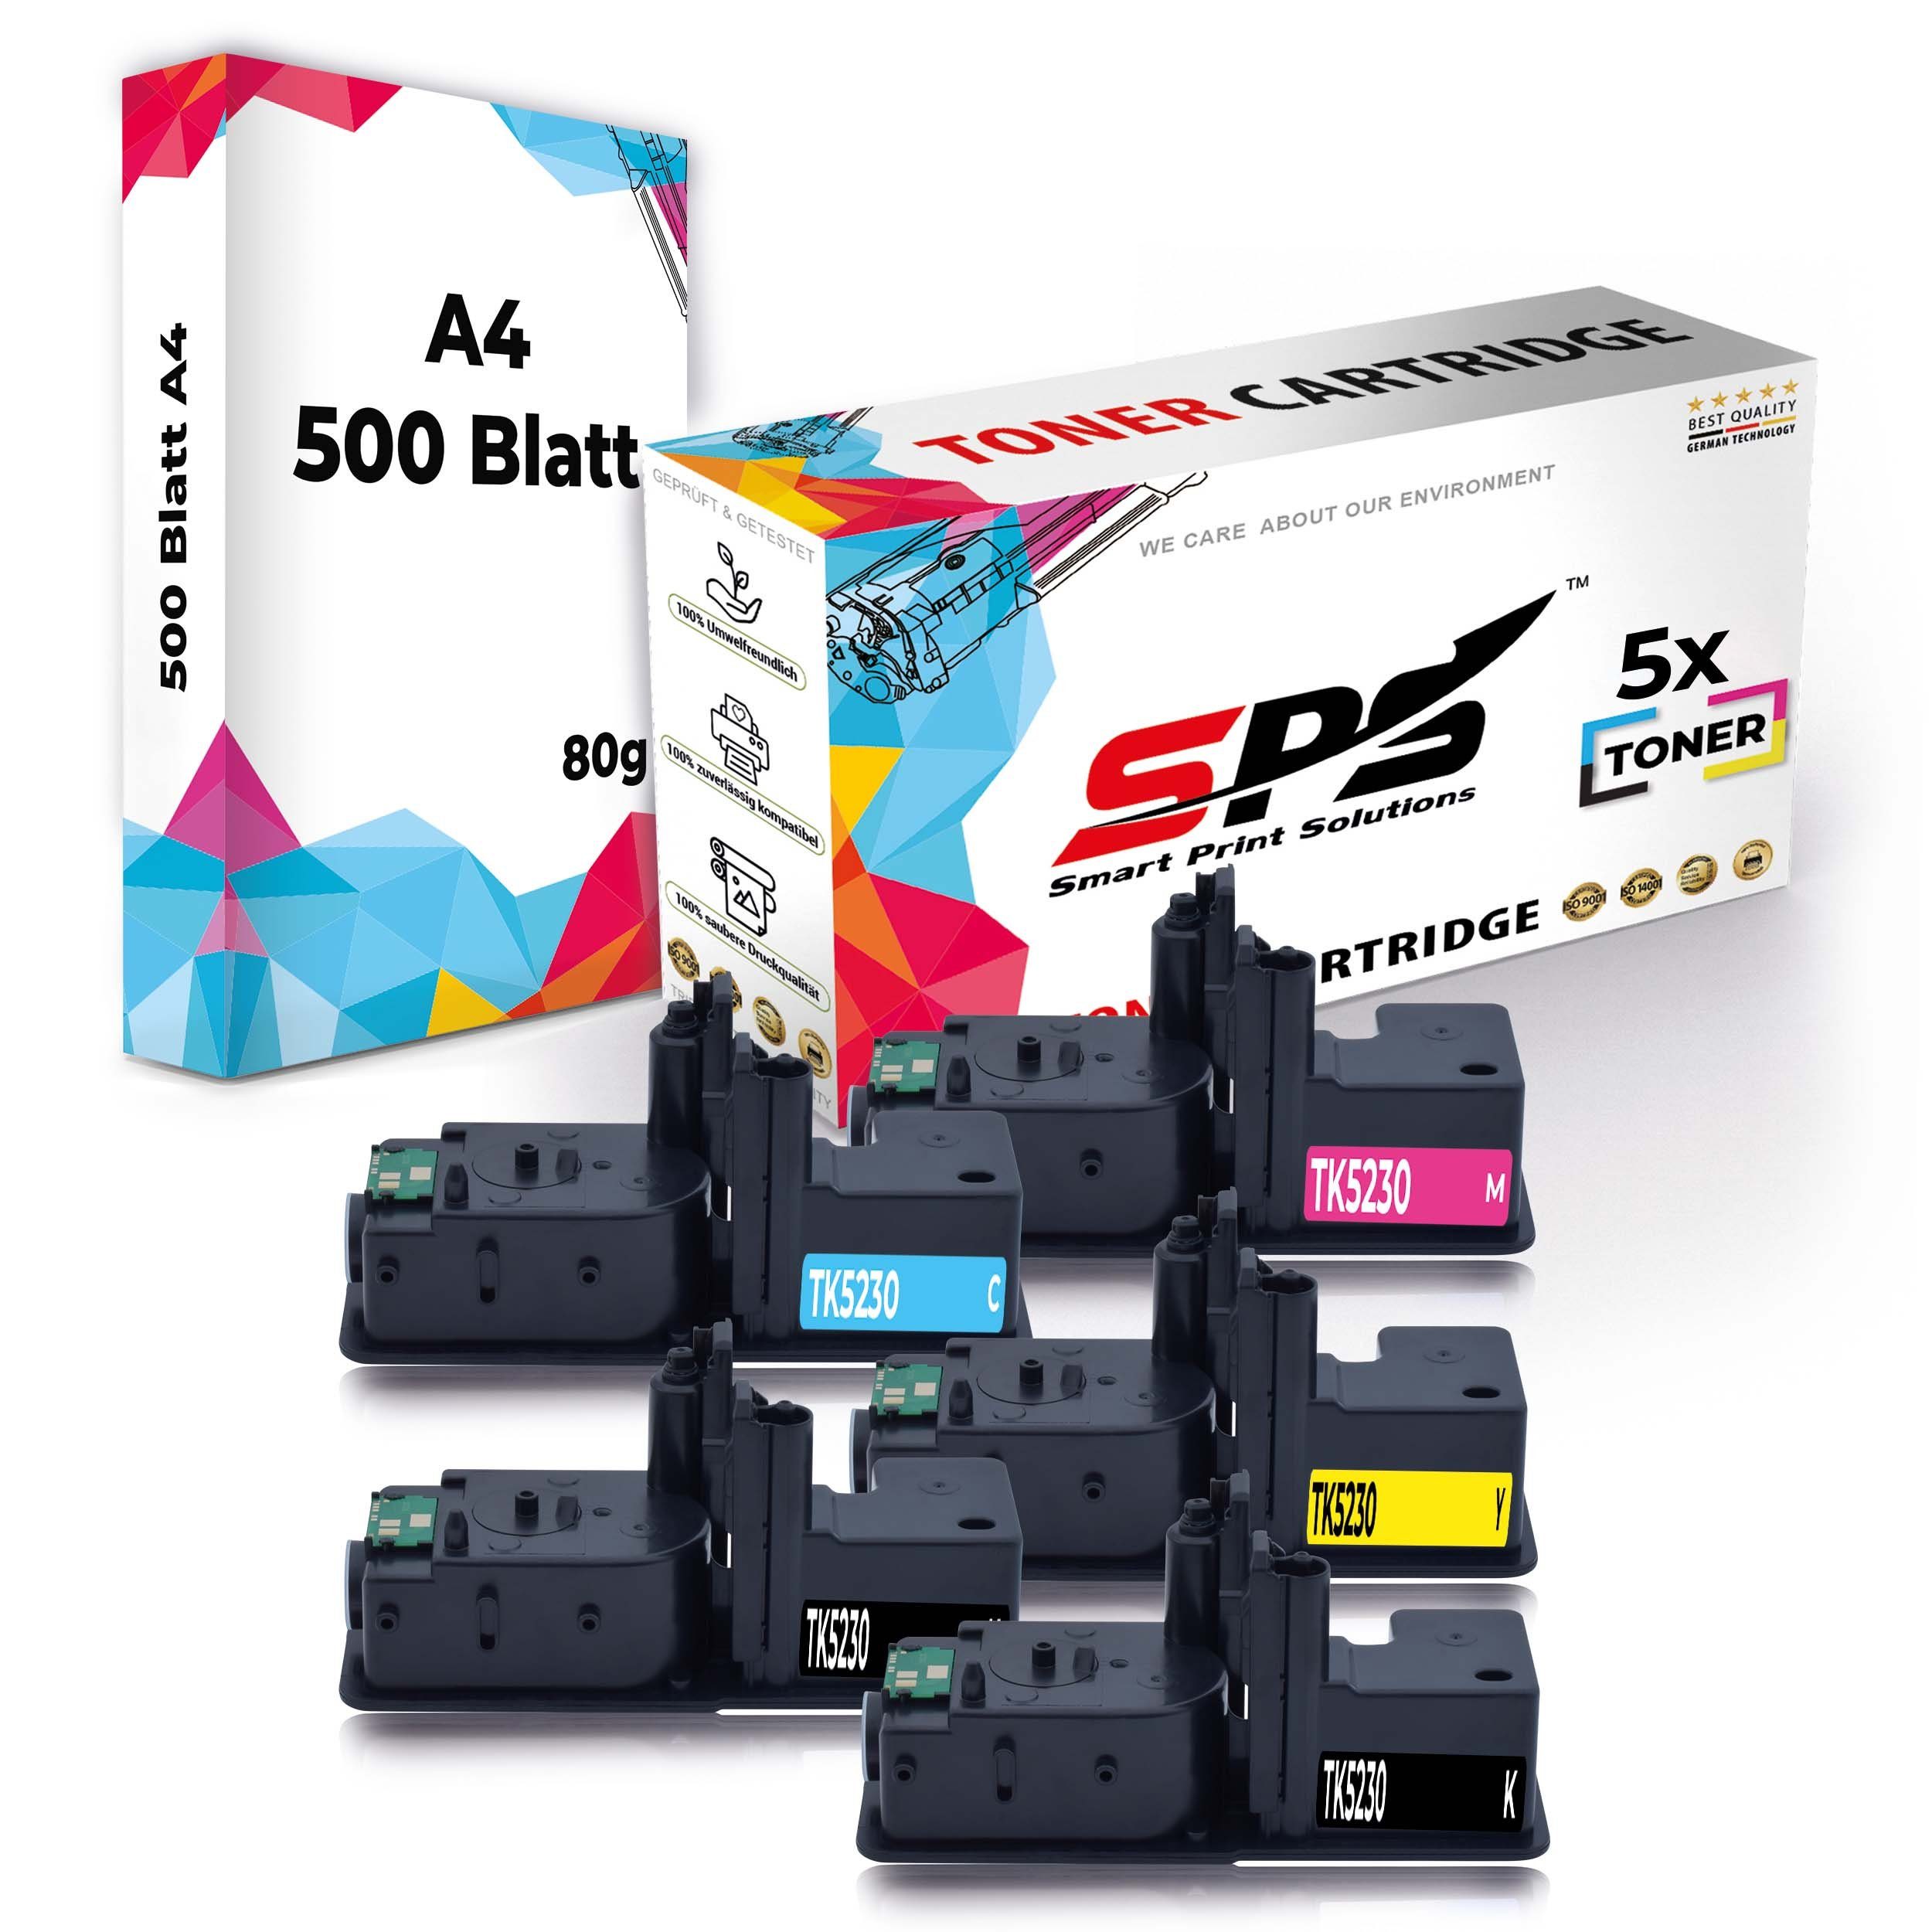 A4 Druckerpapier) SPS 5x (6er Druckerpapier Kompatibel, 5x A4 Pack, Tonerkartusche + Toner,1x Set Multipack